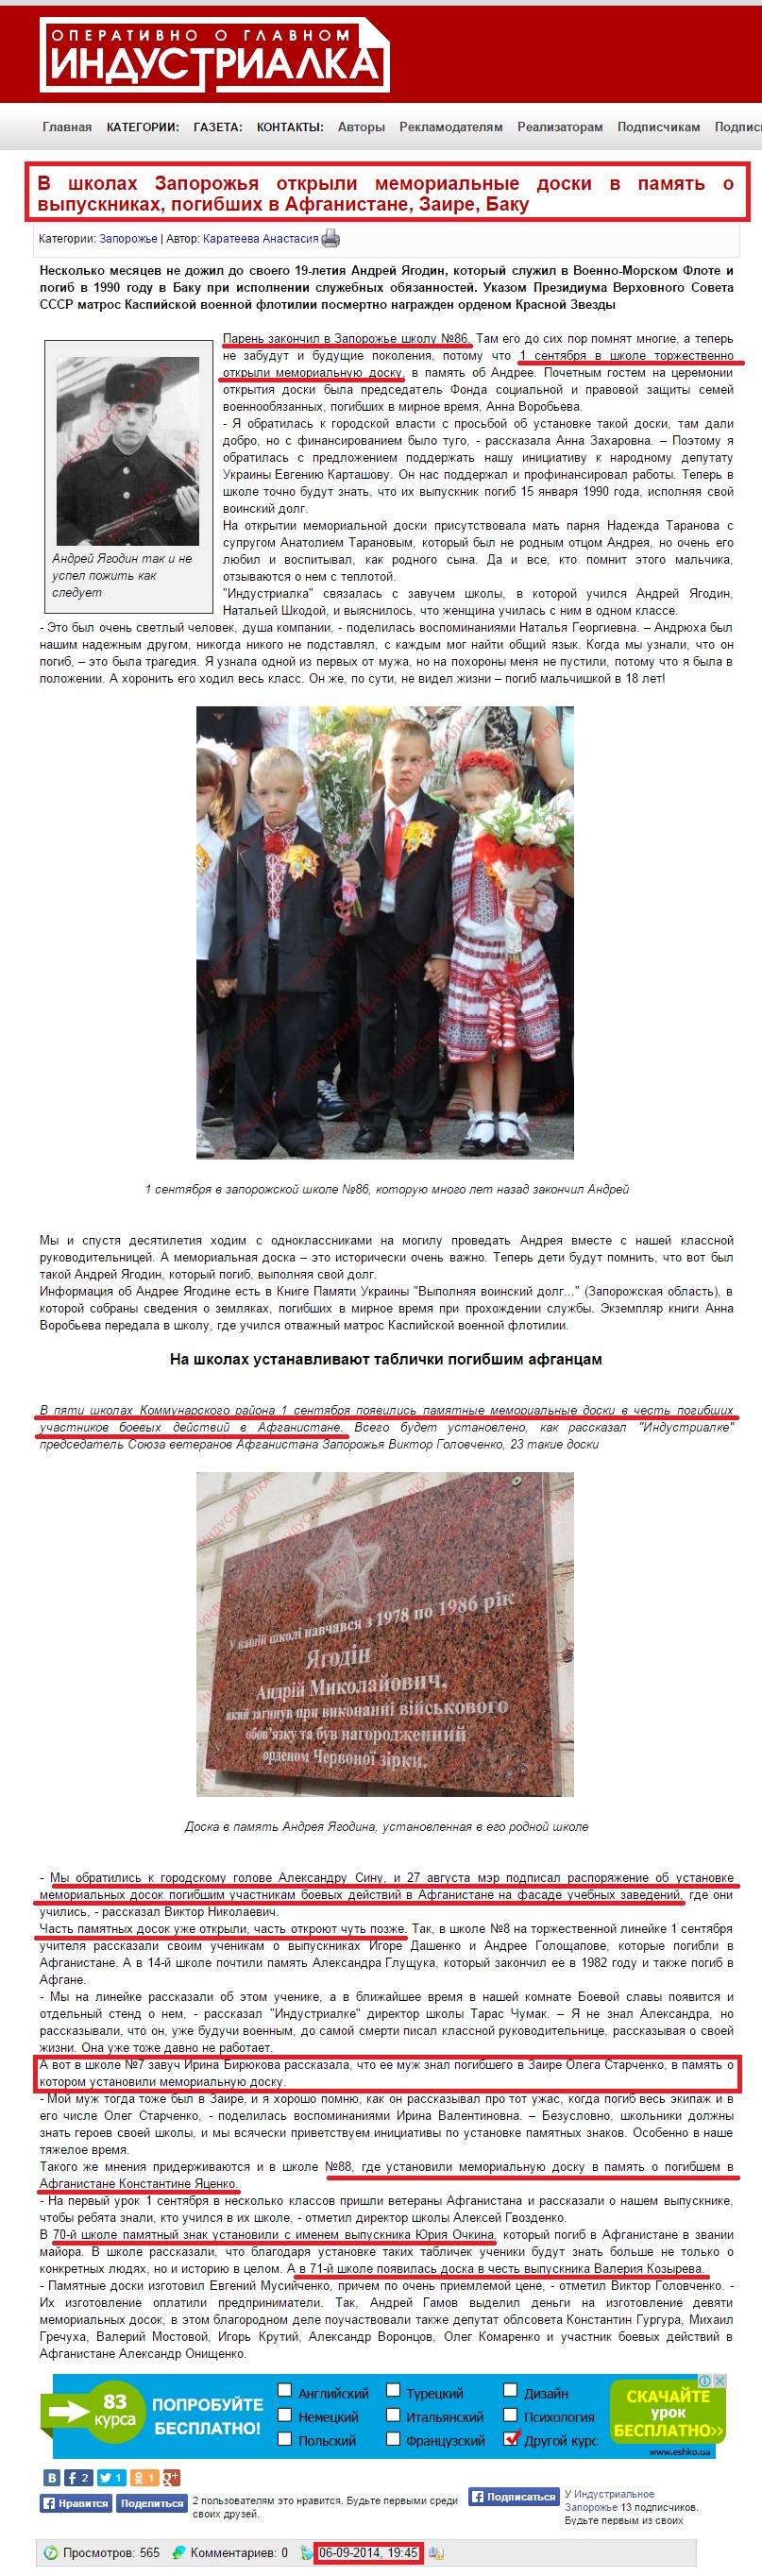 http://iz.com.ua/zaporoje/52140-v-shkolah-zaporozhya-otkryli-memorialnye-doski-v-pamyat-o-vypusknikah-pogibshih-v-afganistane-zaire-baku.html